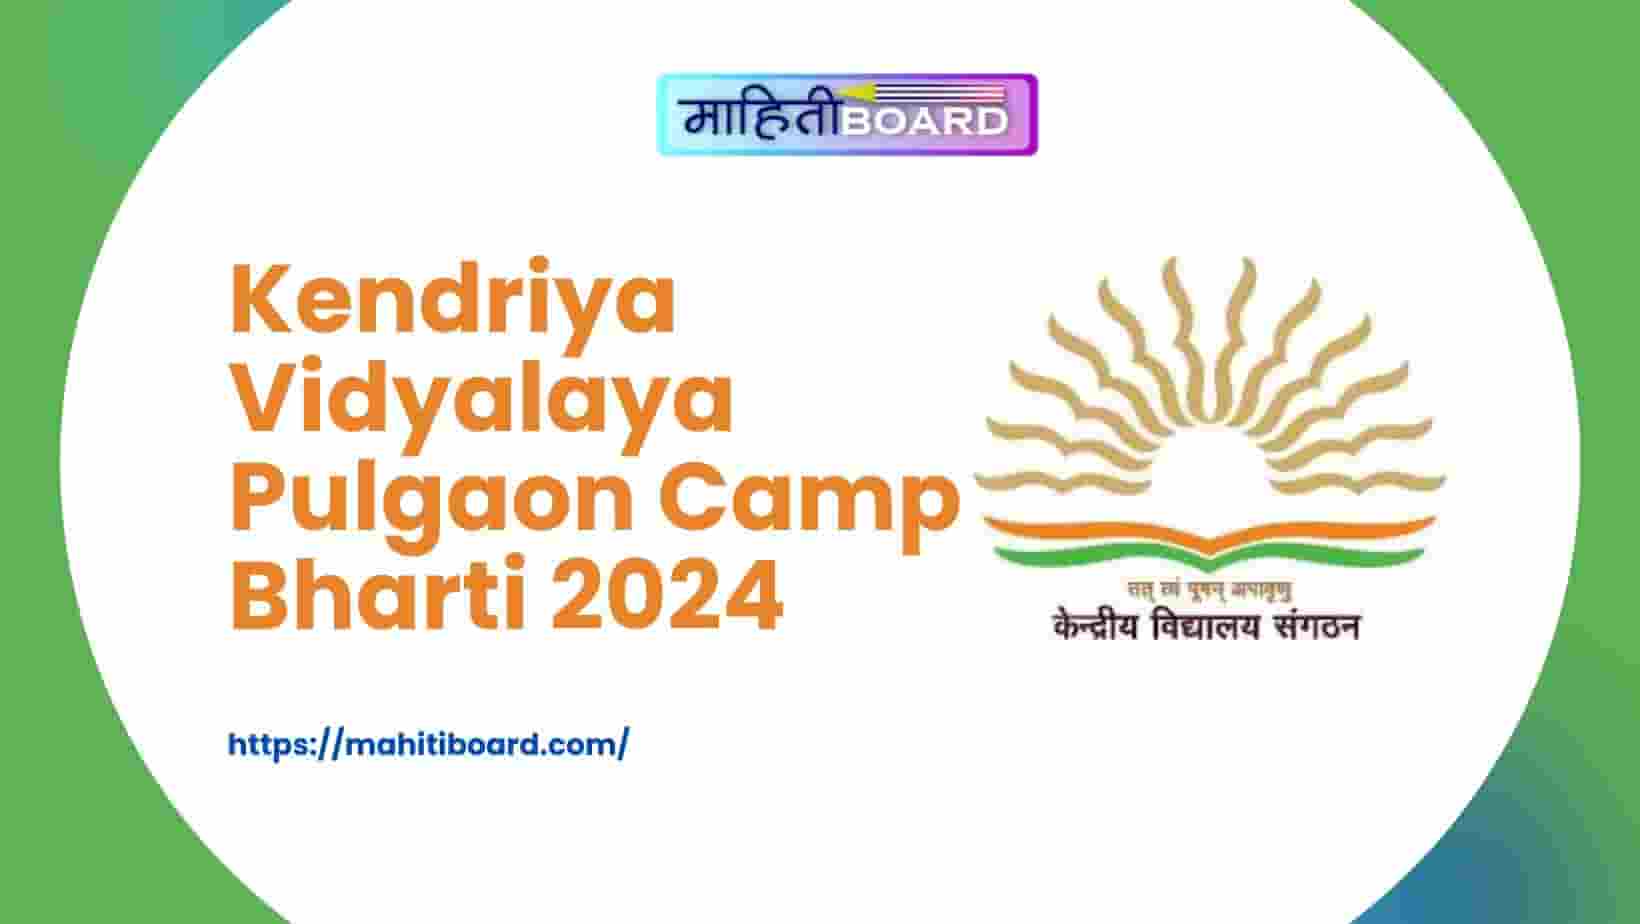 Kendriya Vidyalaya Pulgaon Camp Bharti 2024